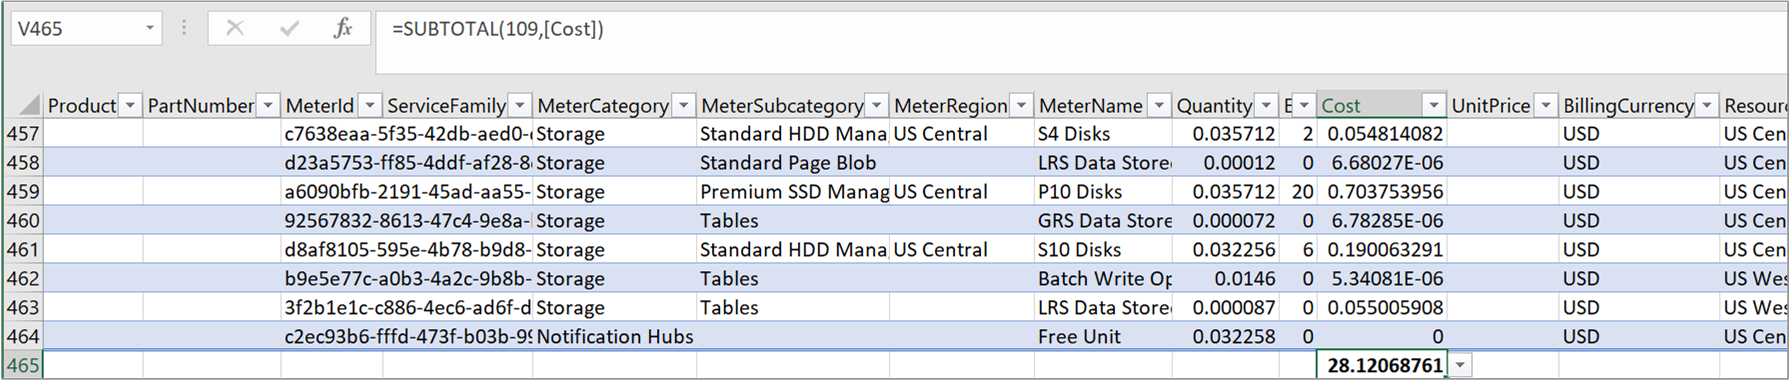 Captura de tela mostrando um exemplo de arquivo de uso CSV com custo somado.